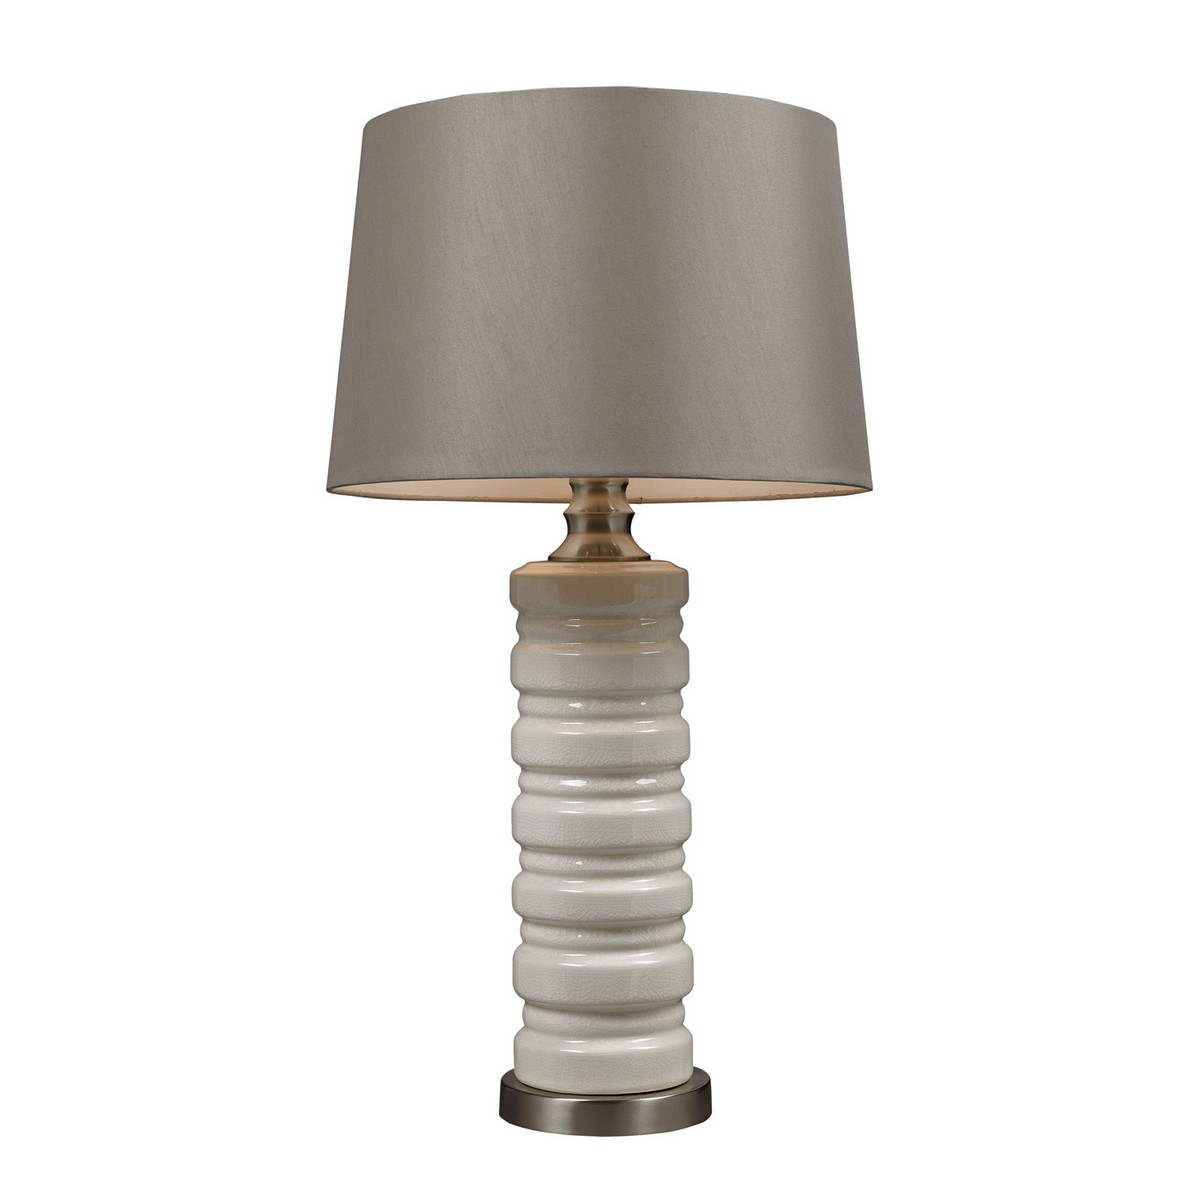 Elk Lighting D131 Table Lamp - Ceram Crackle Ceramic with Brushed Steel Base